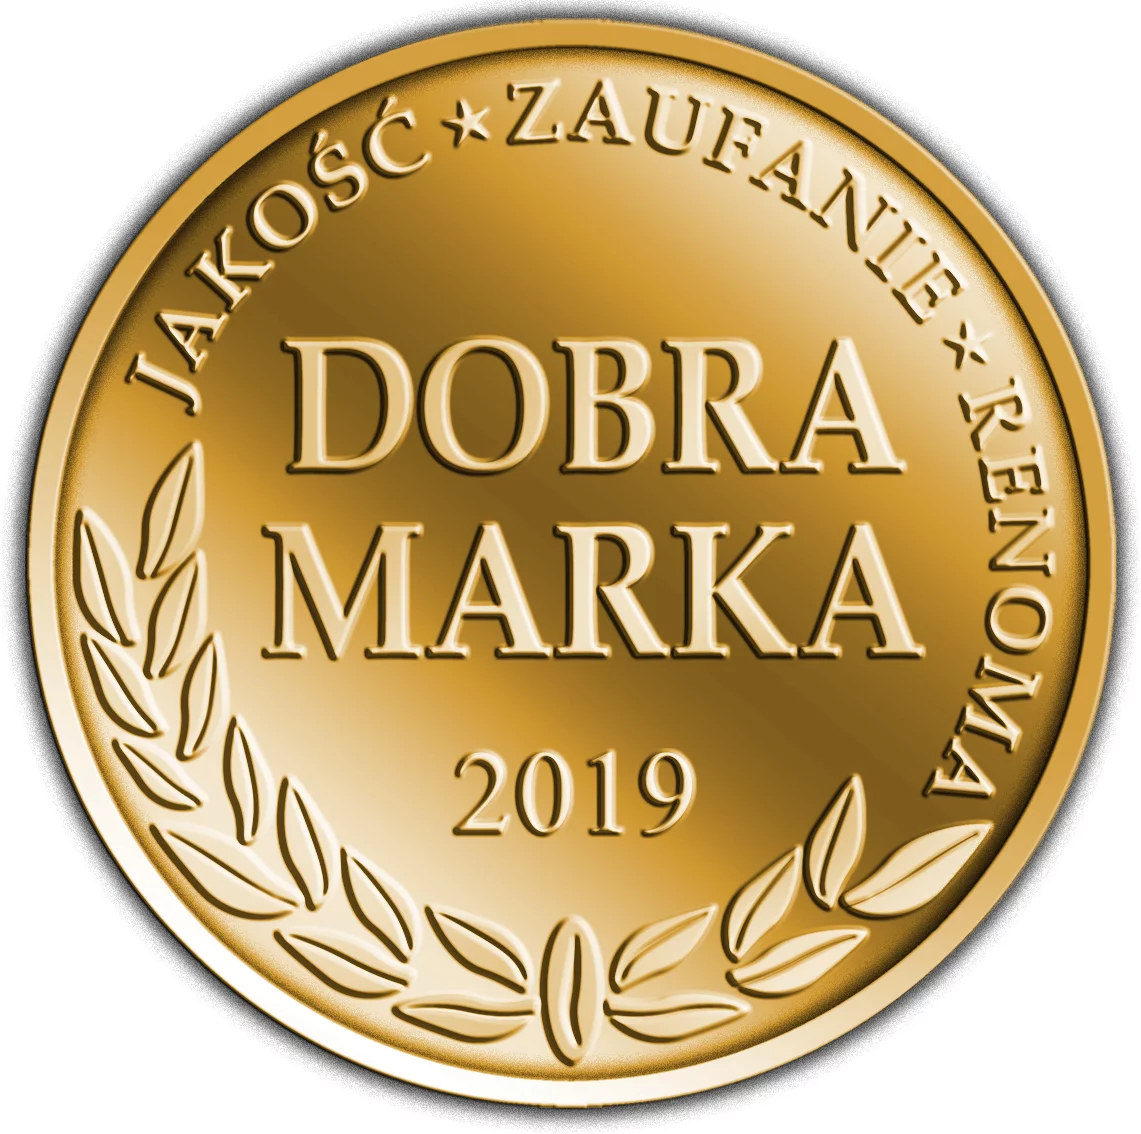 Ogrodzenia JONIEC® zostały wyróżnione tytułem DOBRA MARKA 2019